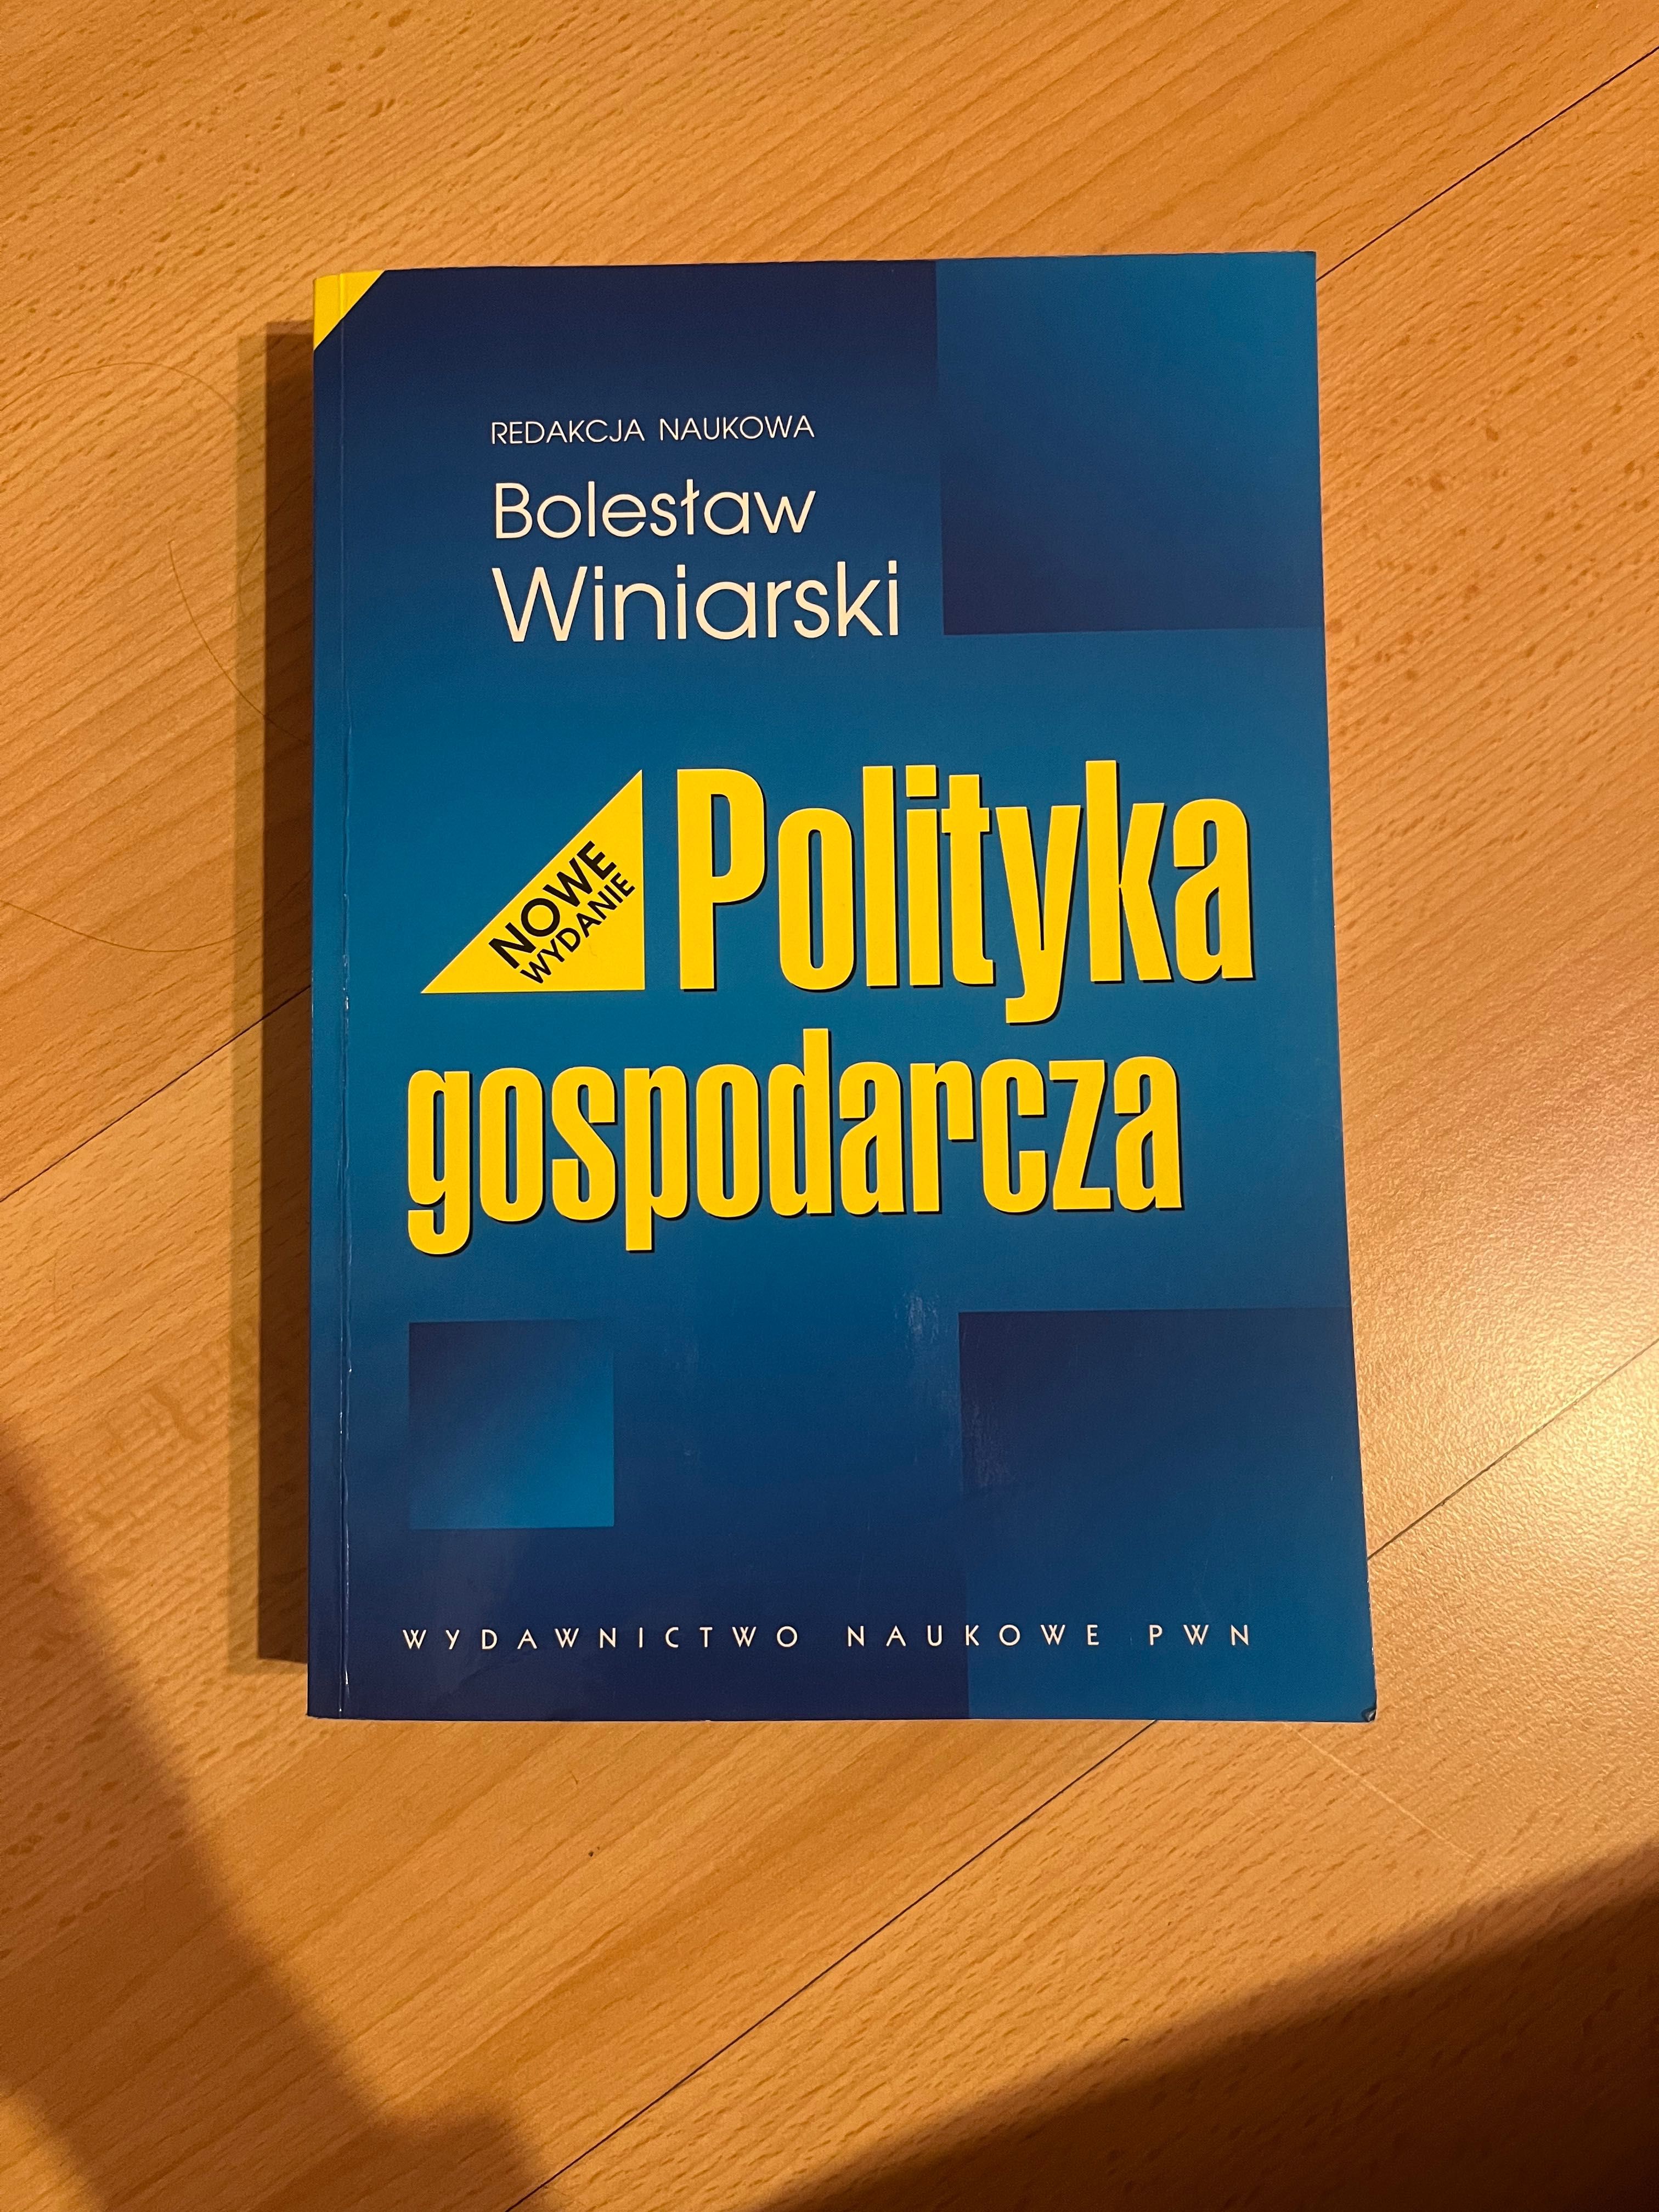 Książka ,,Polityka gospodarcza” Bolesław Winiarski